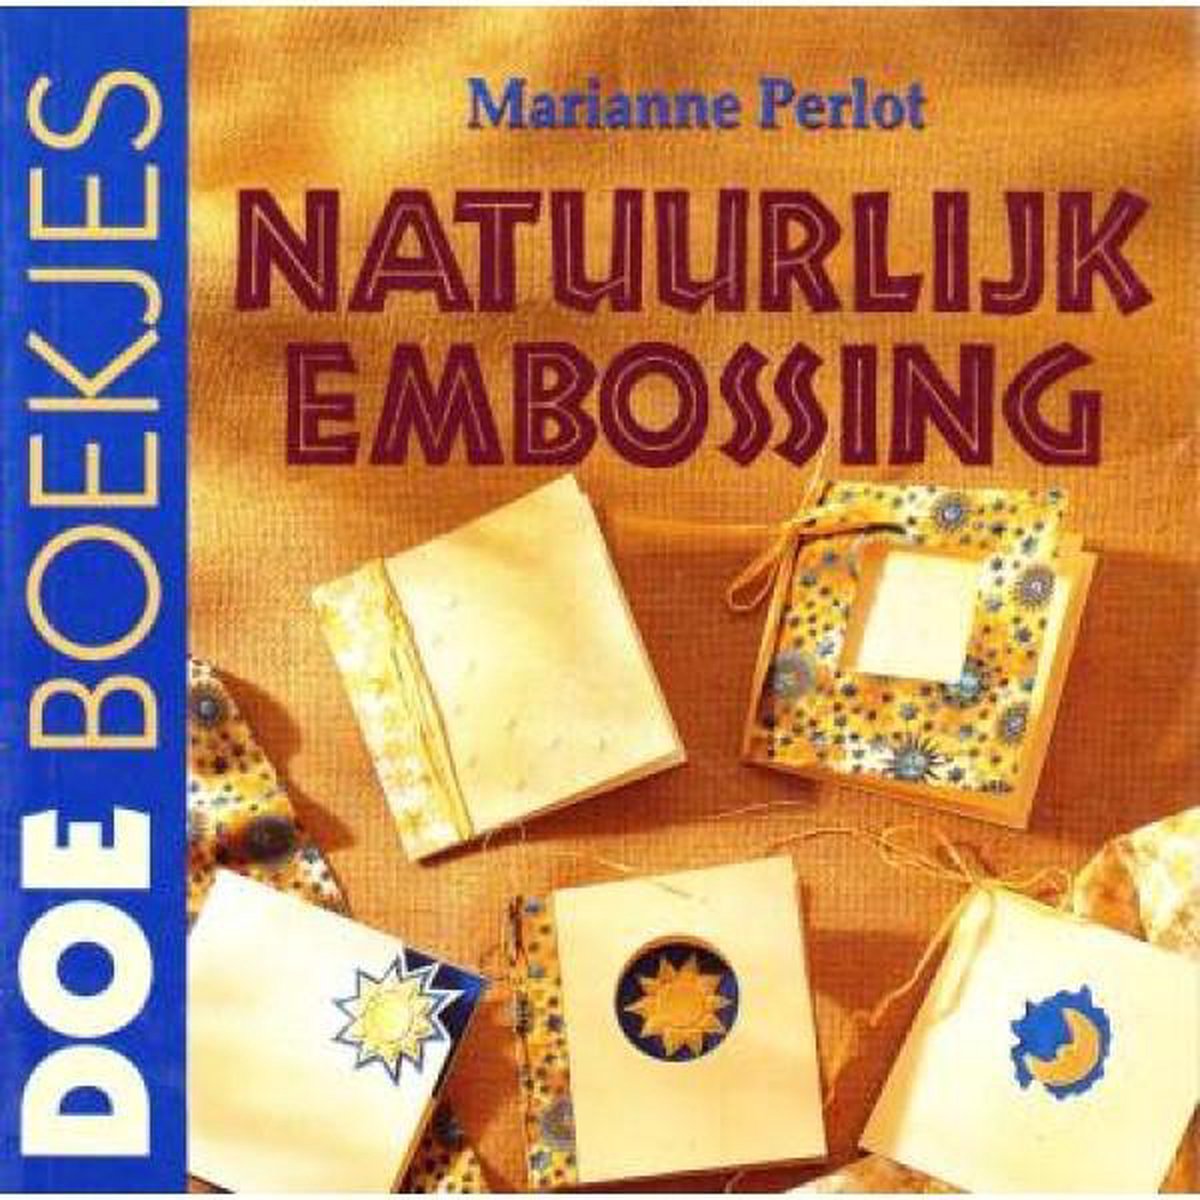 Natuurlijke embossing / Doeboekjes